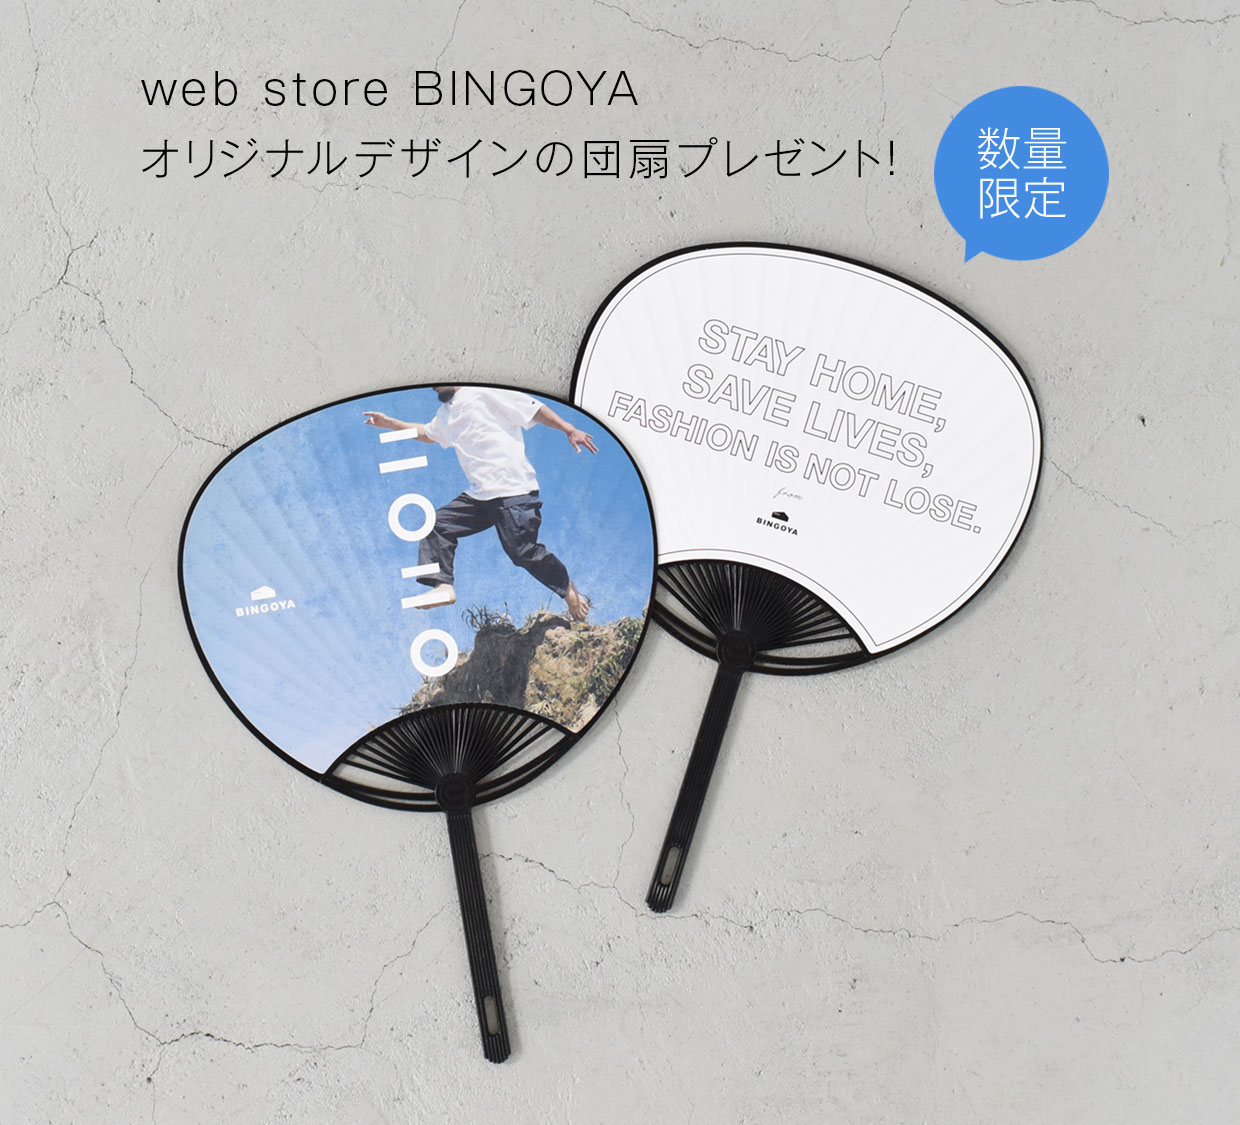 オリジナル団扇をプレゼント Bingoya